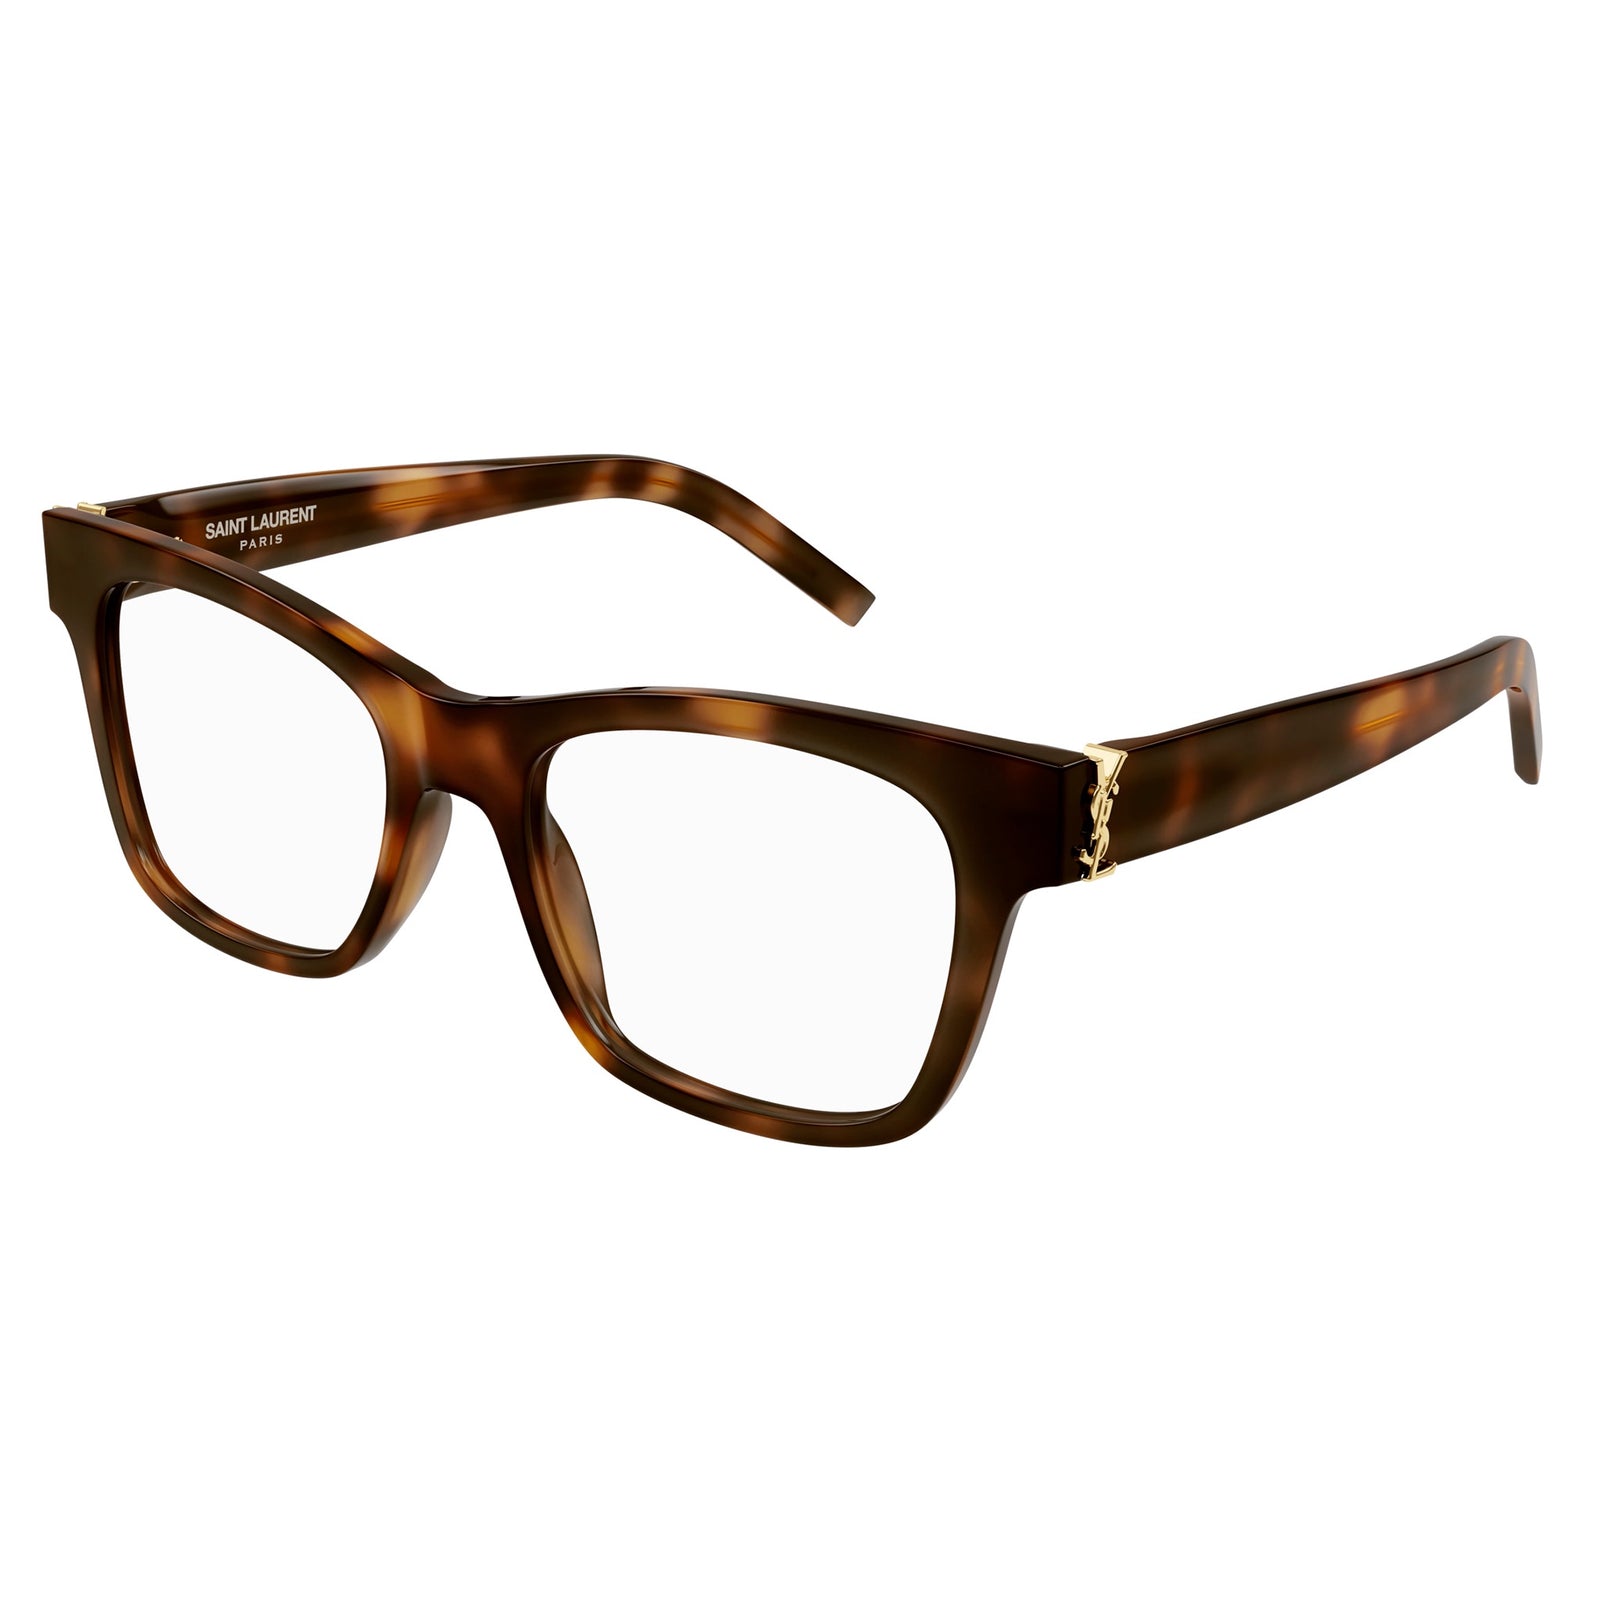 Louis Vuitton, Accessories, Louis Vuitton Sunglasses M33